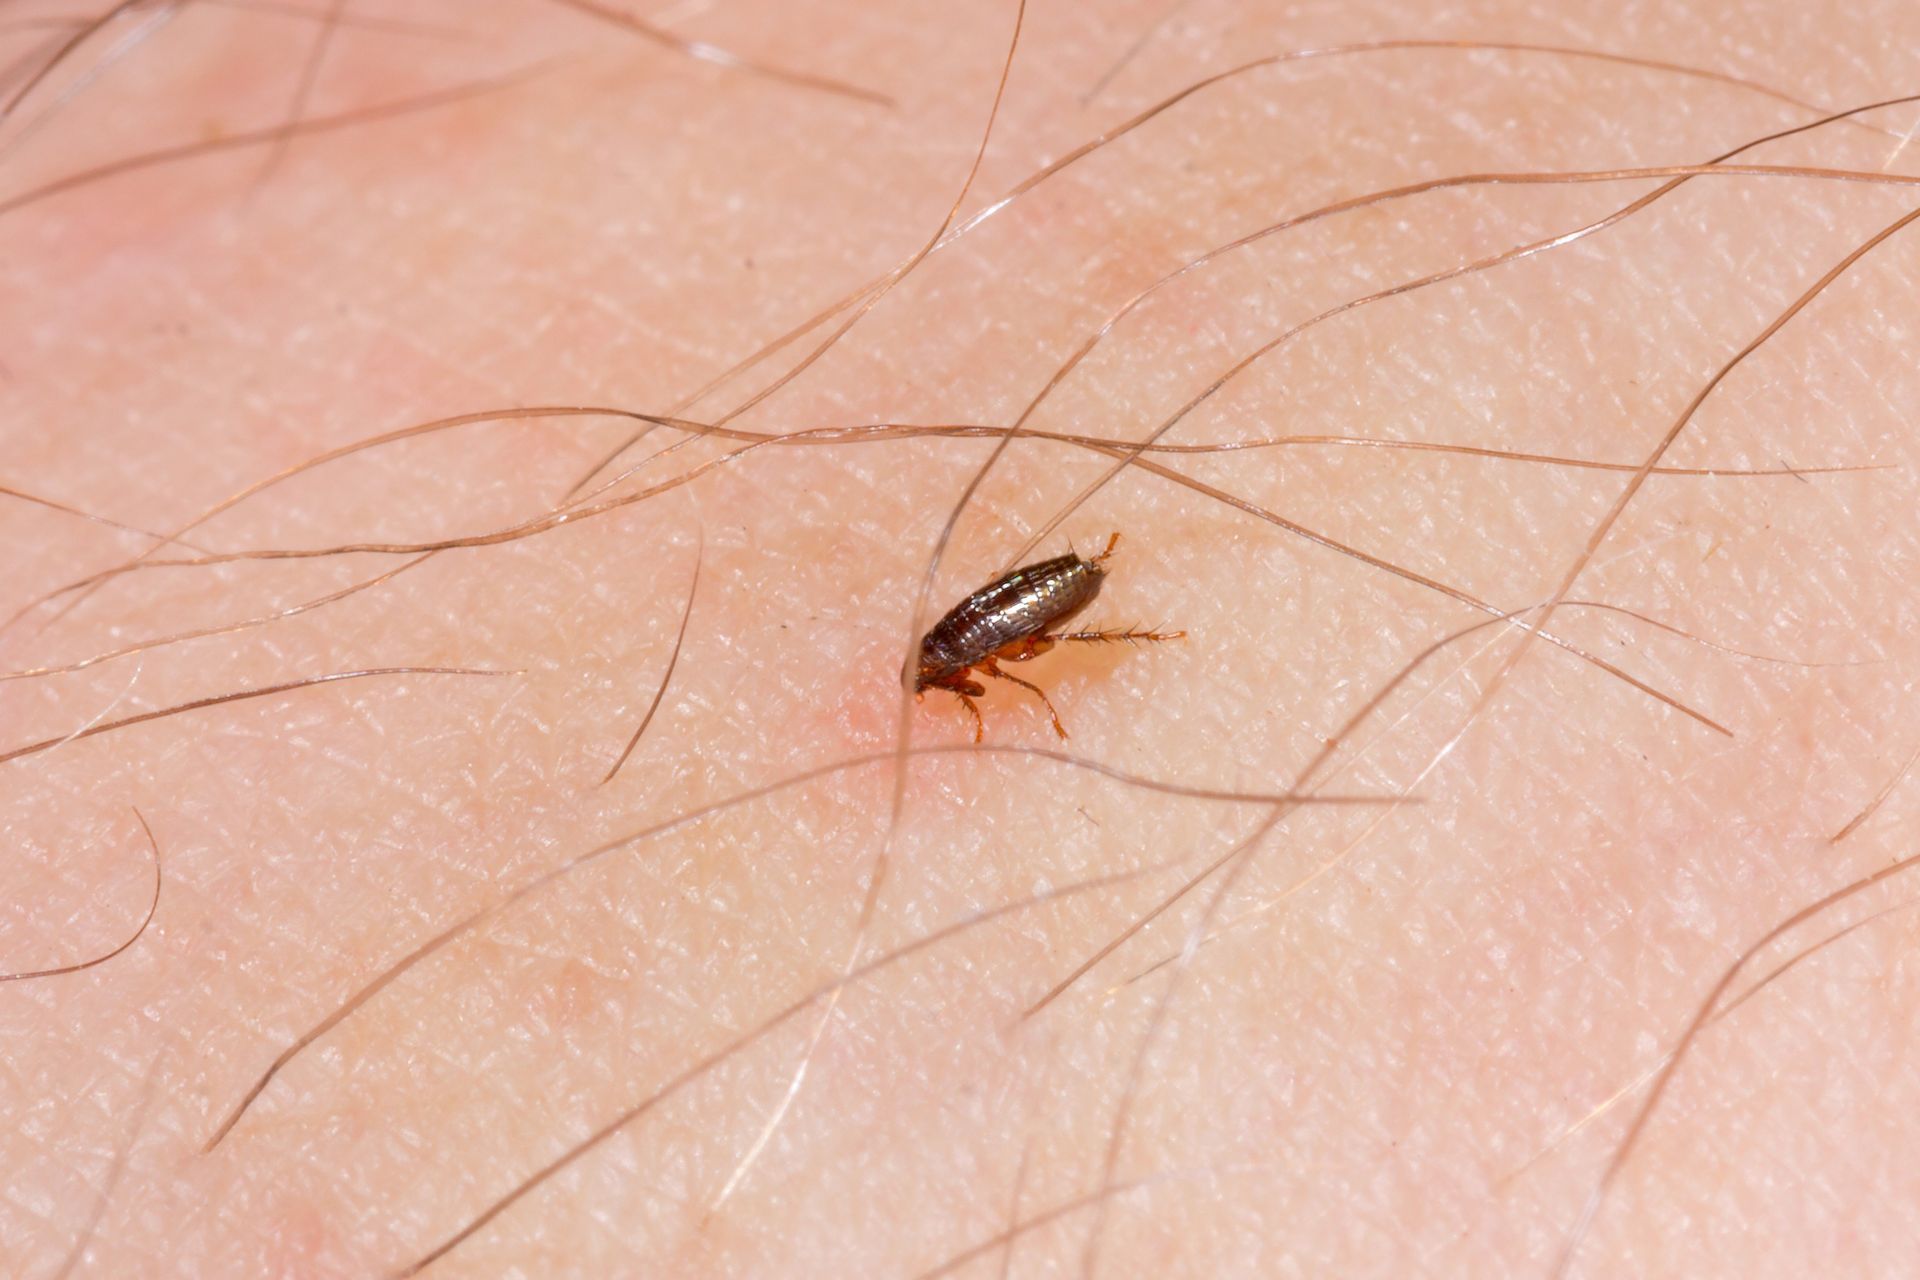 image of a flea on a human